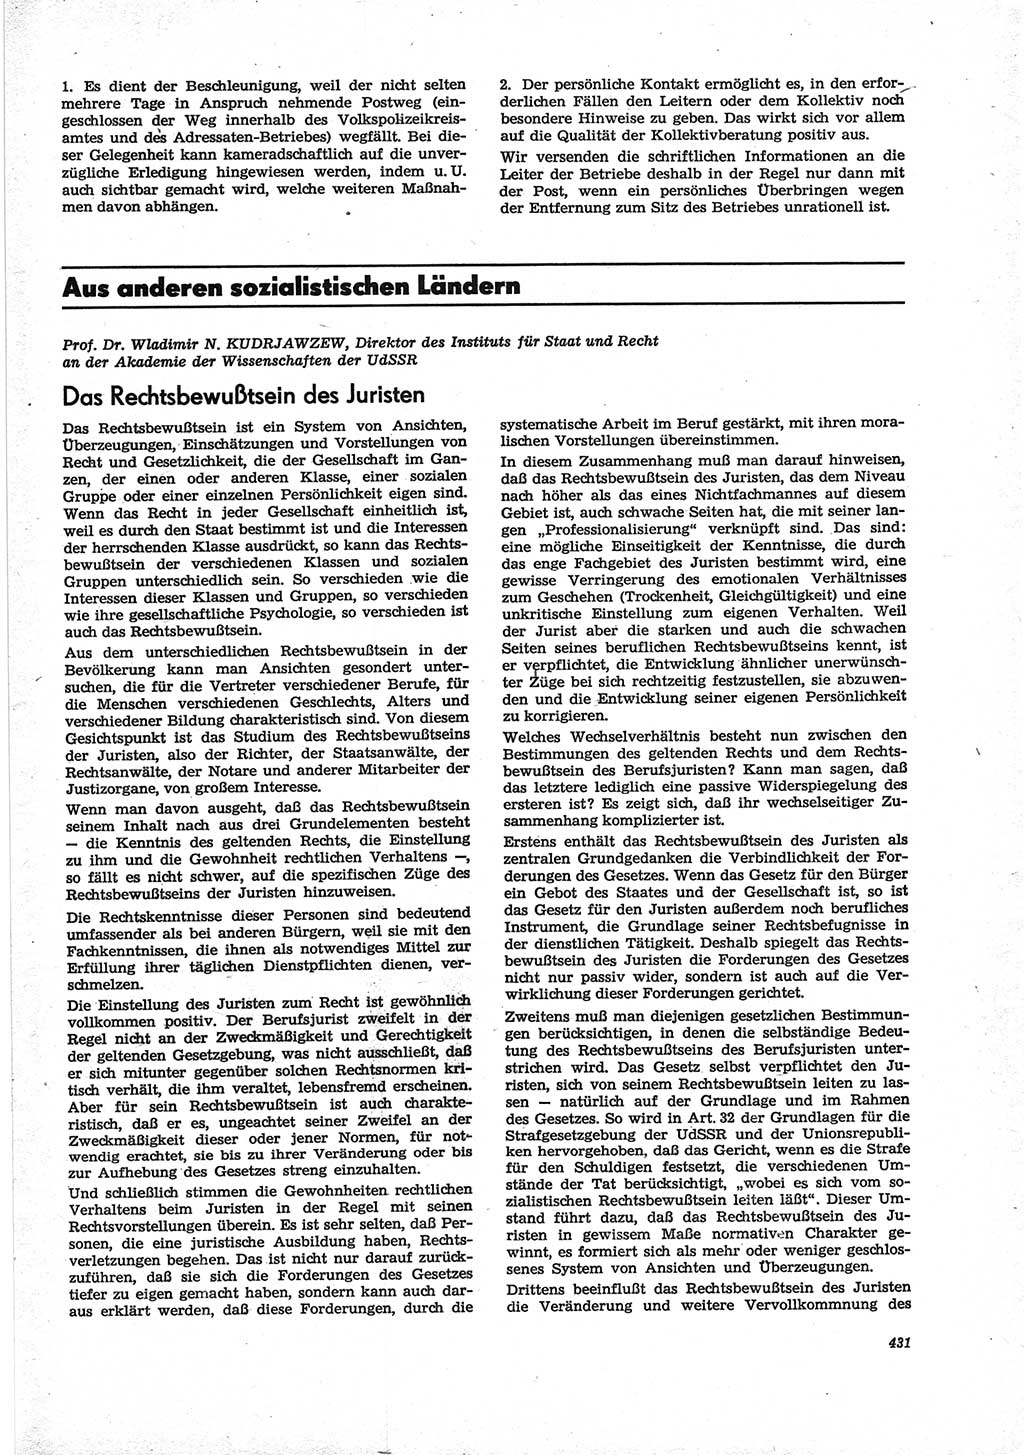 Neue Justiz (NJ), Zeitschrift für Recht und Rechtswissenschaft [Deutsche Demokratische Republik (DDR)], 28. Jahrgang 1974, Seite 431 (NJ DDR 1974, S. 431)